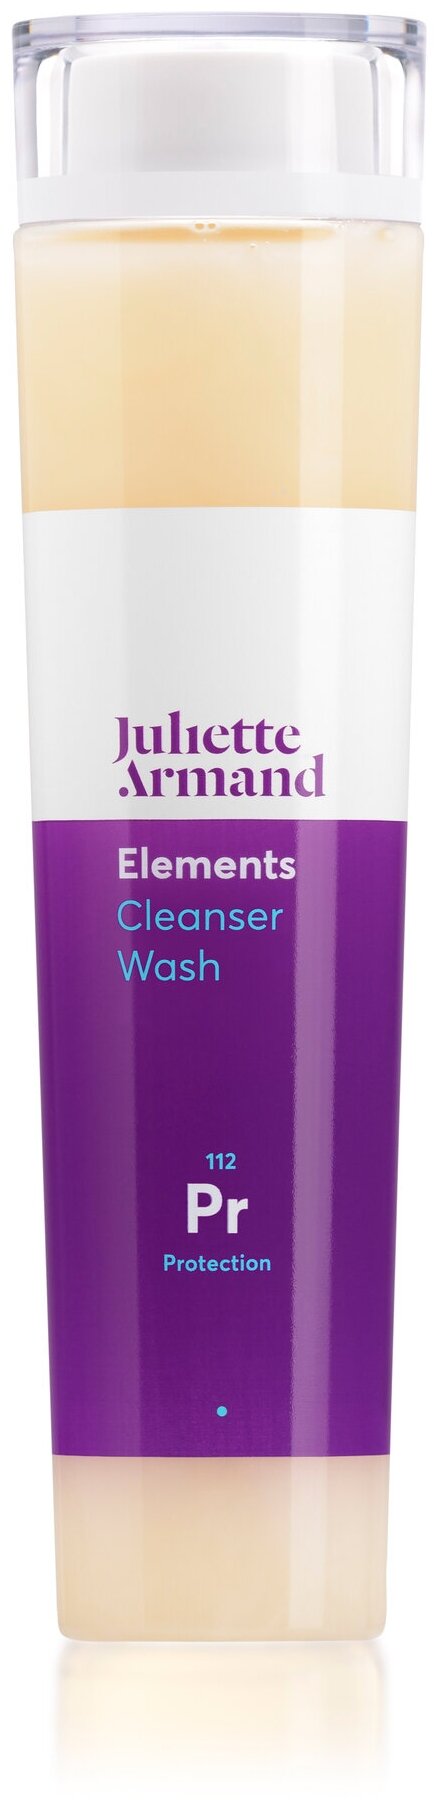 Juliette Armand Cleanser Wash / Очищающий гель с протеинами пшеницы, 210 мл